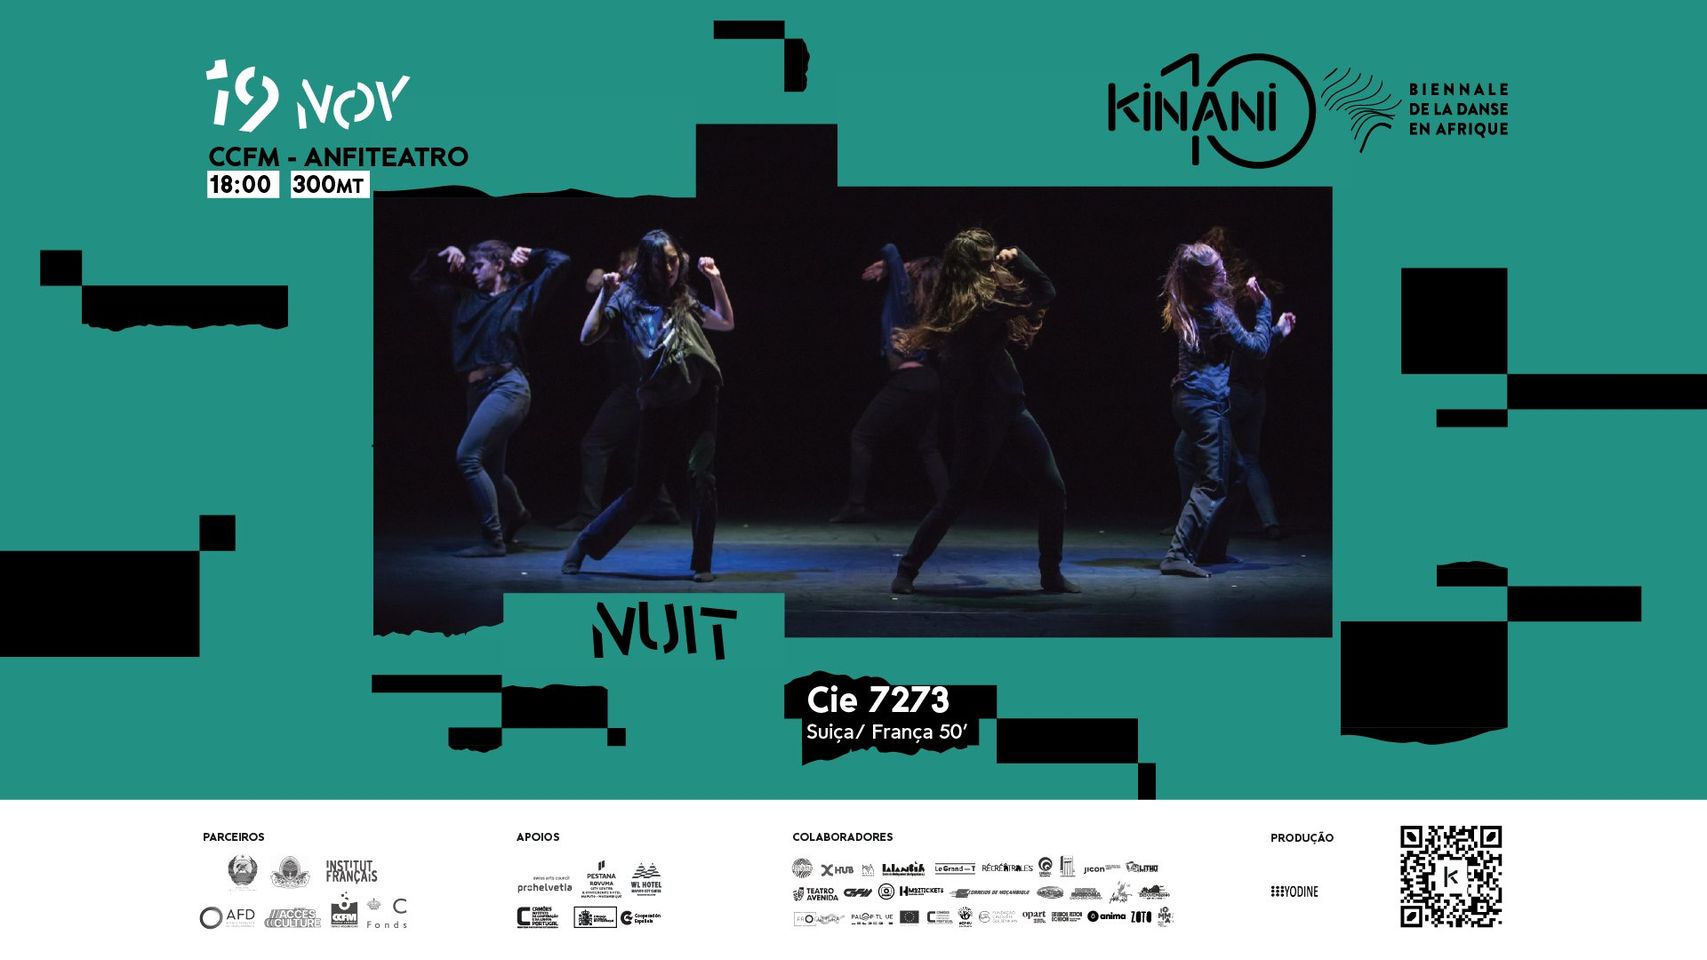 KINANI - Biennale de la Danse en Afrique | "Nuit" de Cie 7273